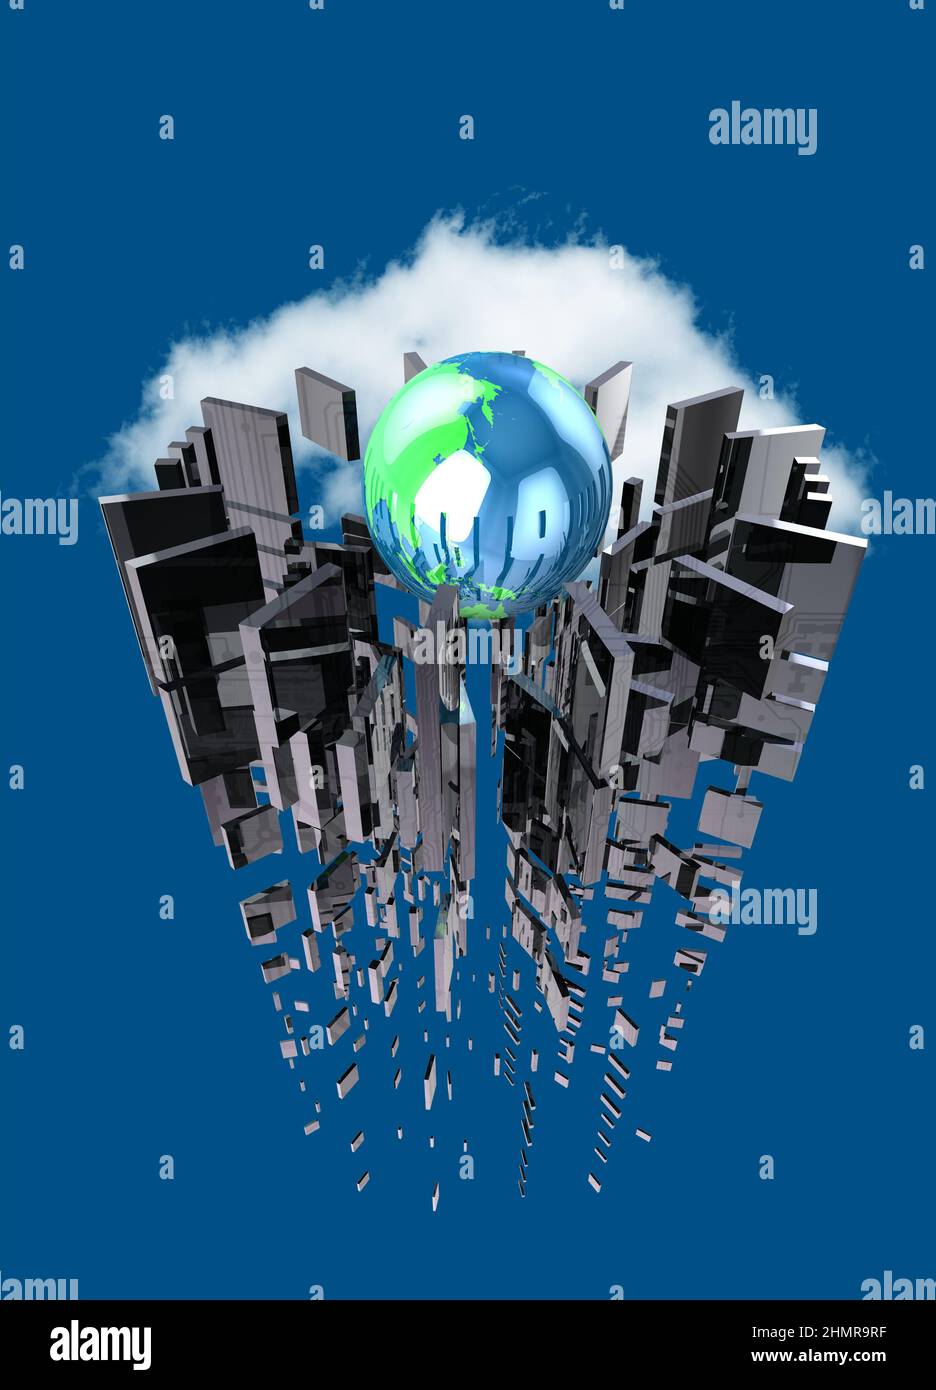 Global computing, conceptual illustration Stock Photo